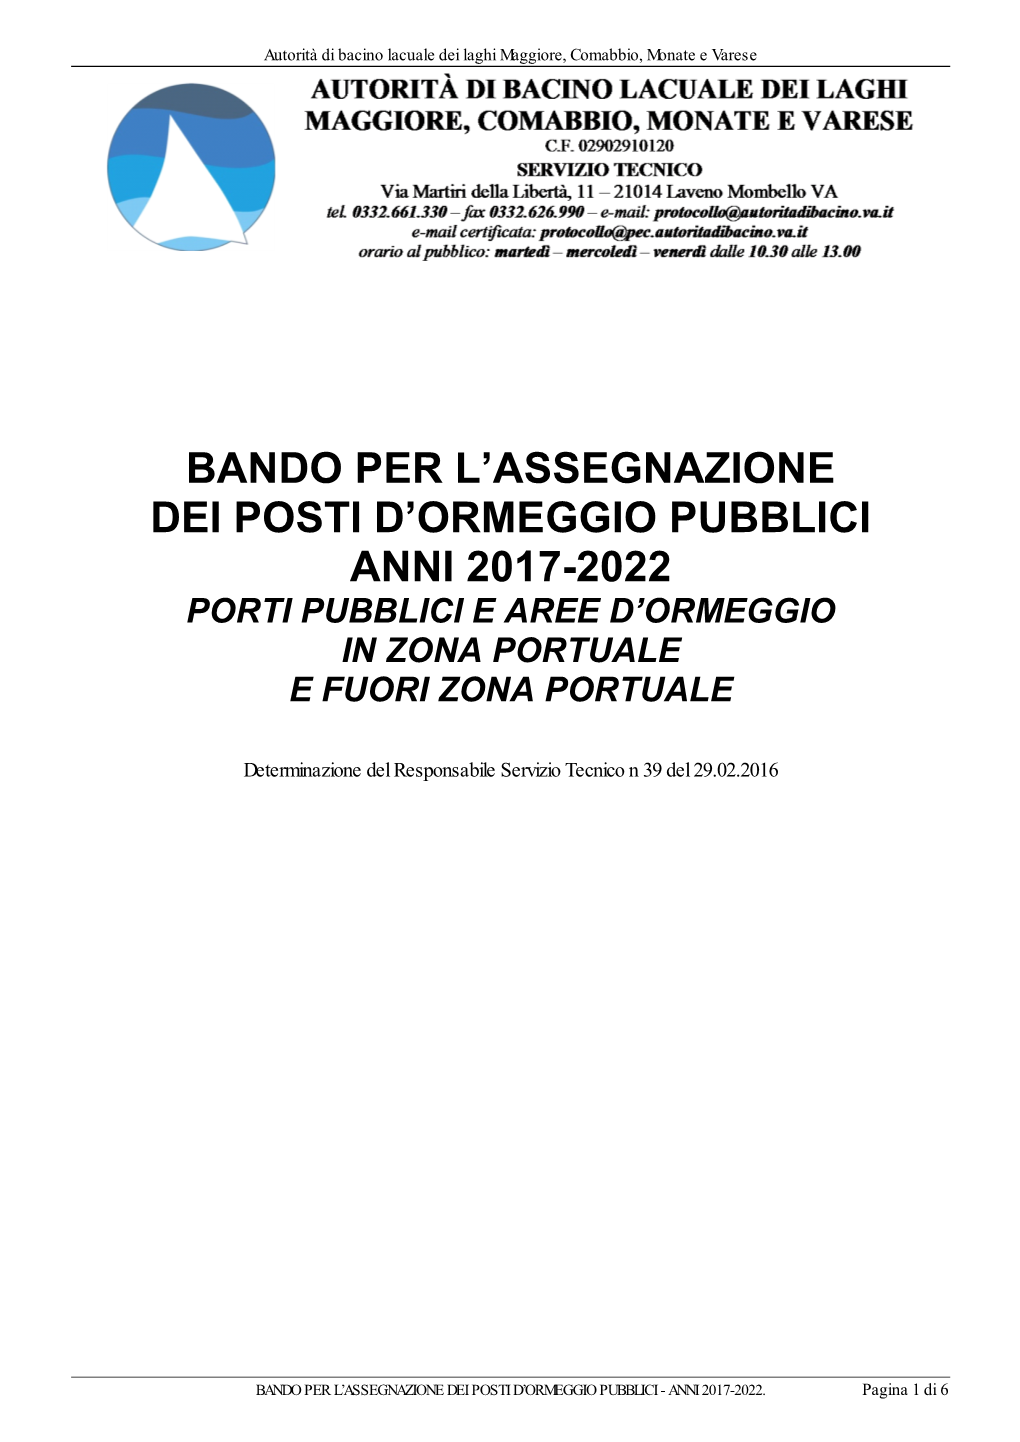 Bando Per L'assegnazione Dei Posti D'ormeggio Pubblici Anni 2017-2022